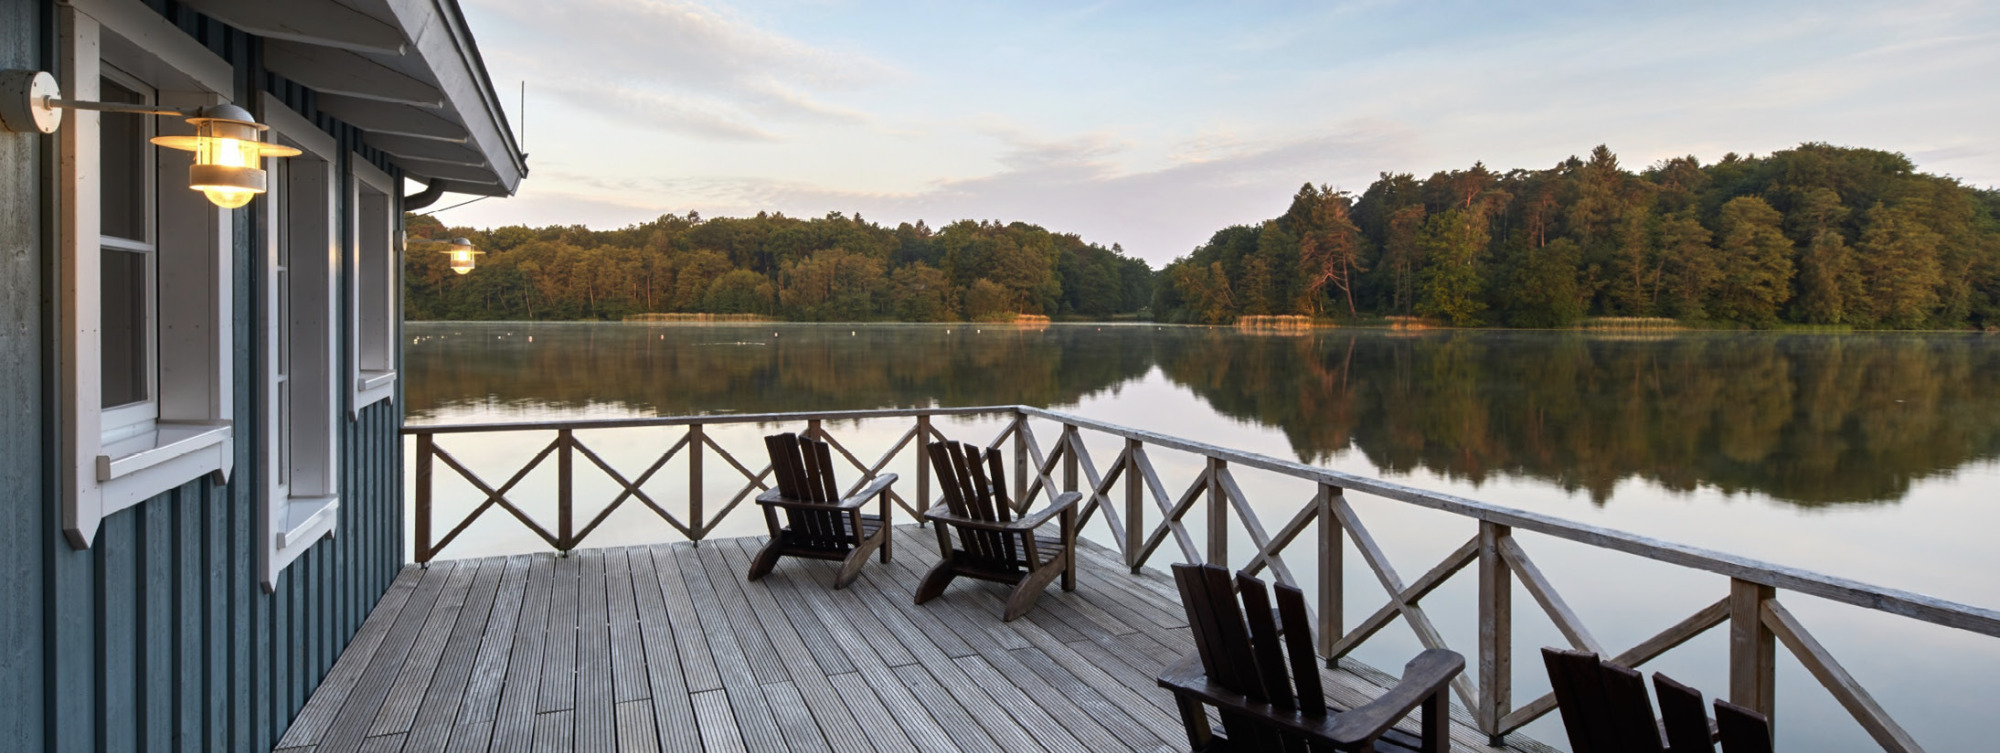 Saunaveranda mit Stühlen und Blick auf einen See